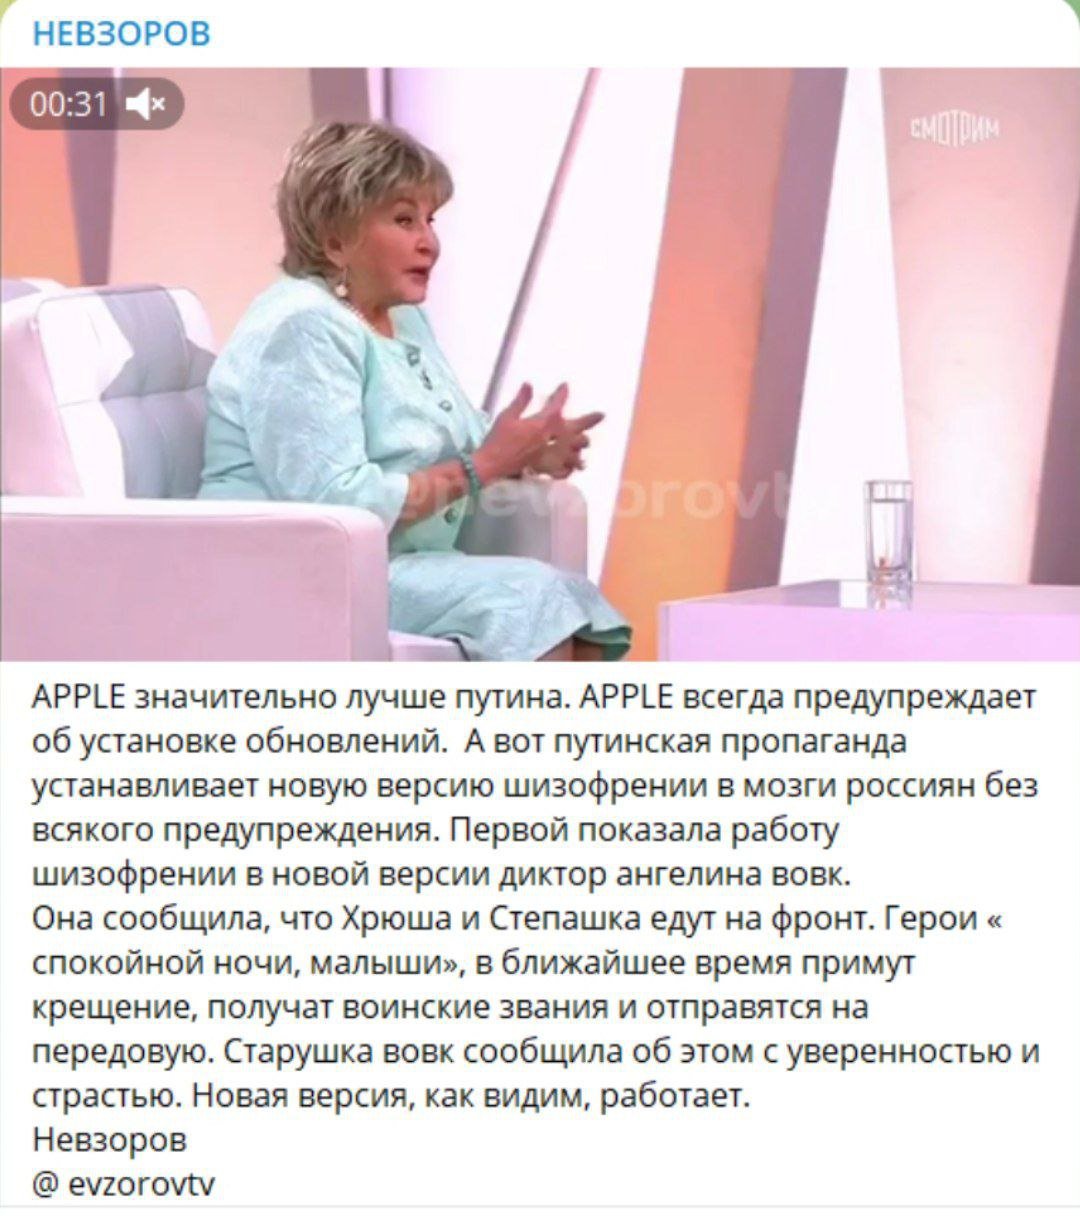 "Новая версия шизофрении", - Невзоров прокомментировал намерения Вовк ехать на фронт с Хрюшей и Степашкой